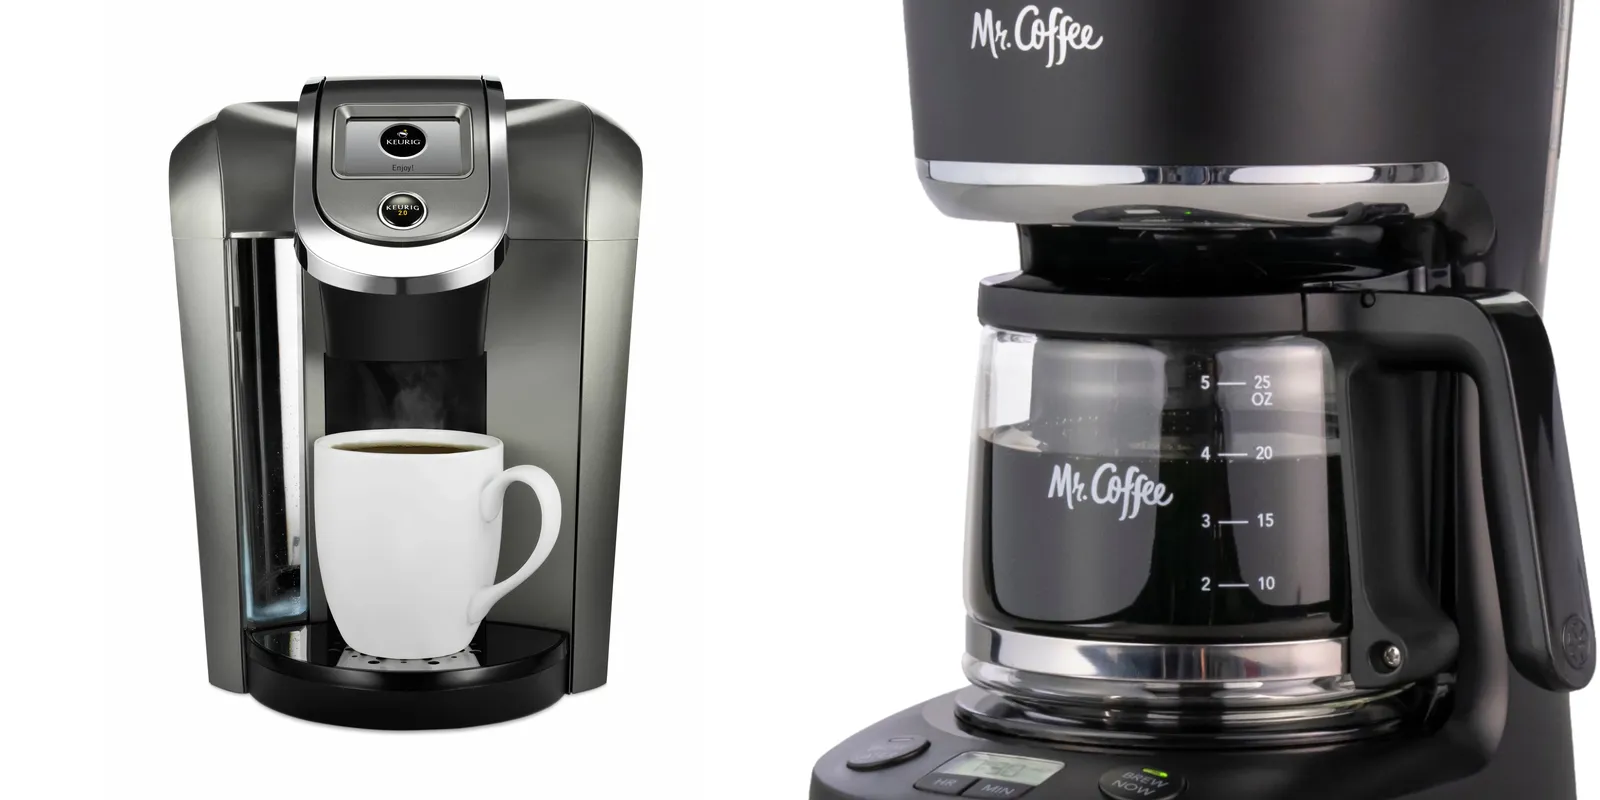 Keurig vs Mr coffee